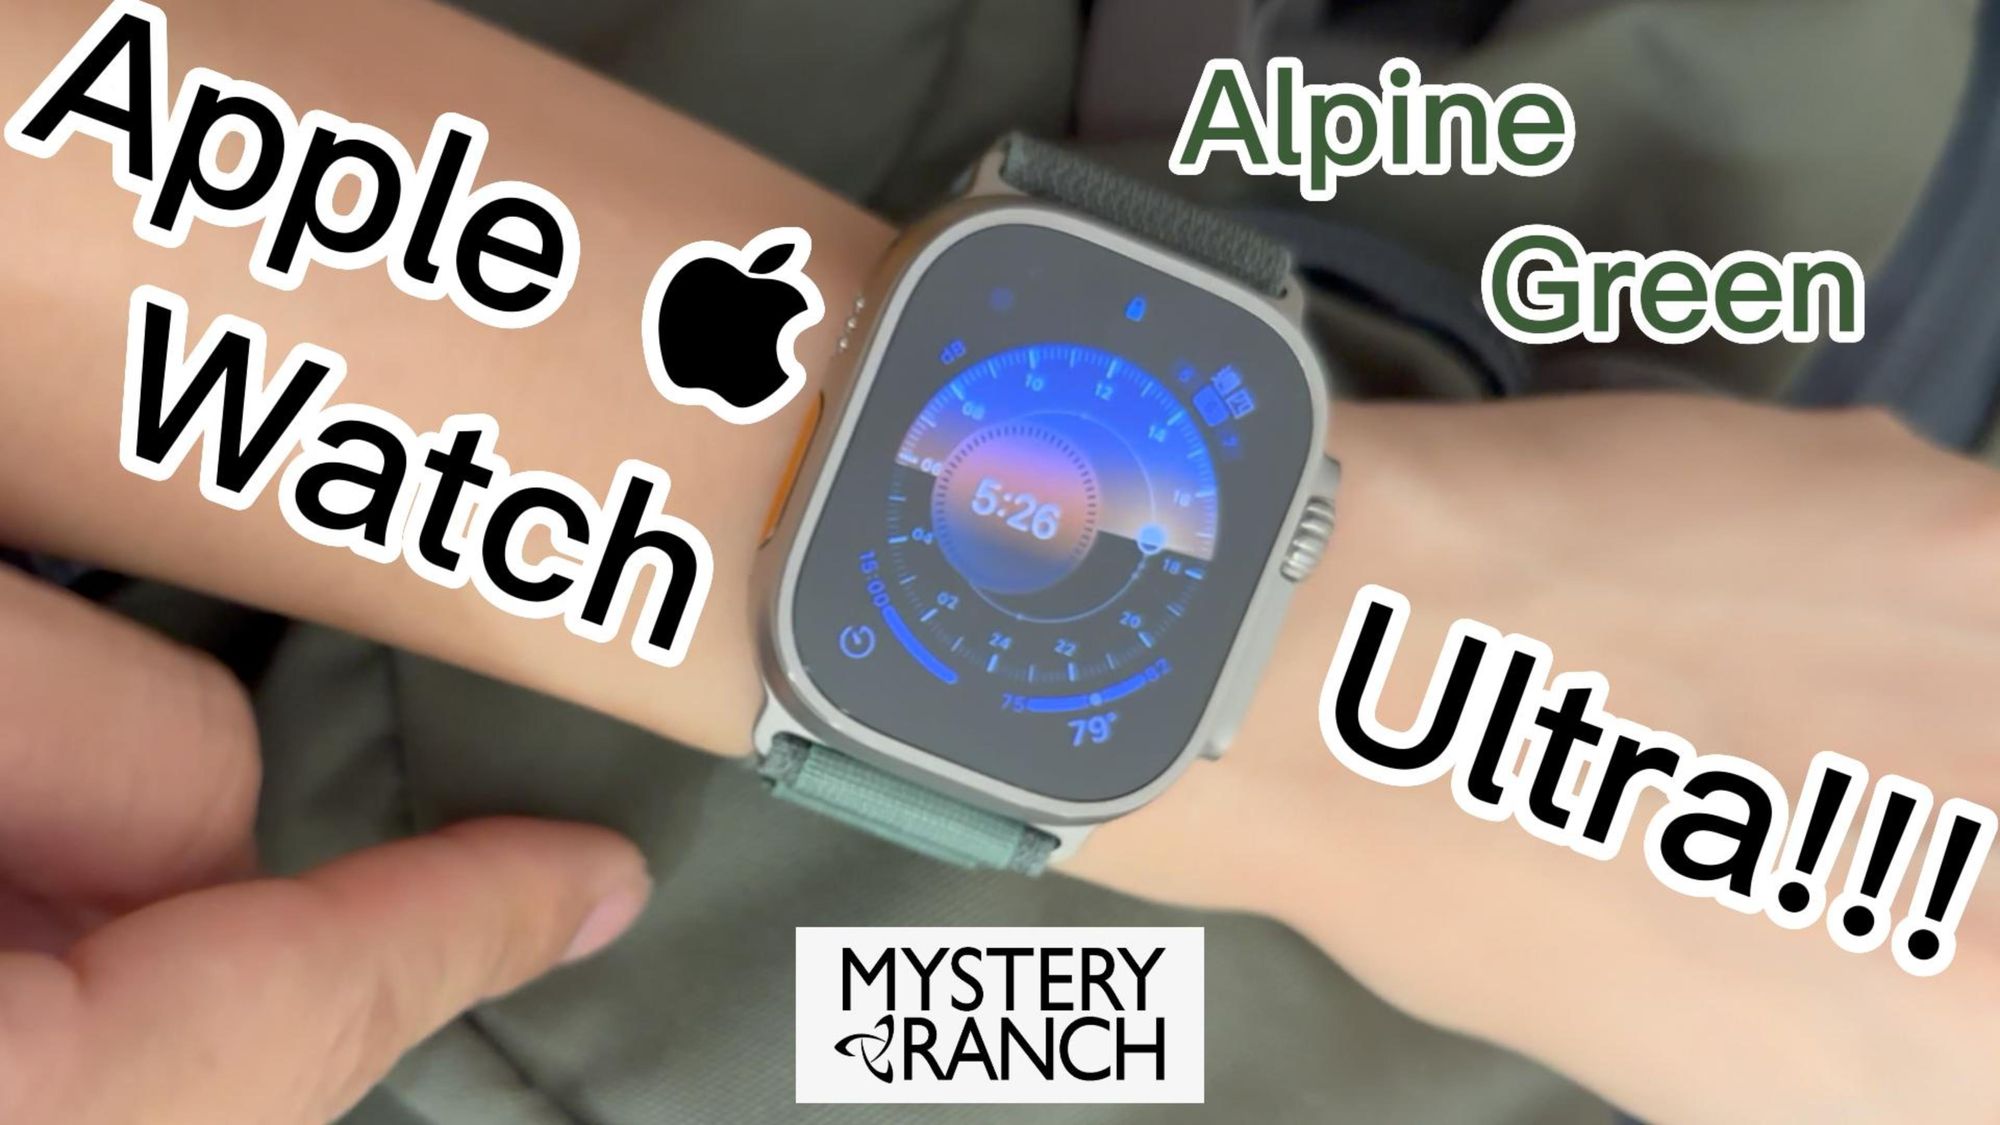 開箱 Apple Watch Ultra 綠色高山回環錶帶! S 號大小剛好！跟 Mystery Ranch 綠色狩獵包搭配合嗎？